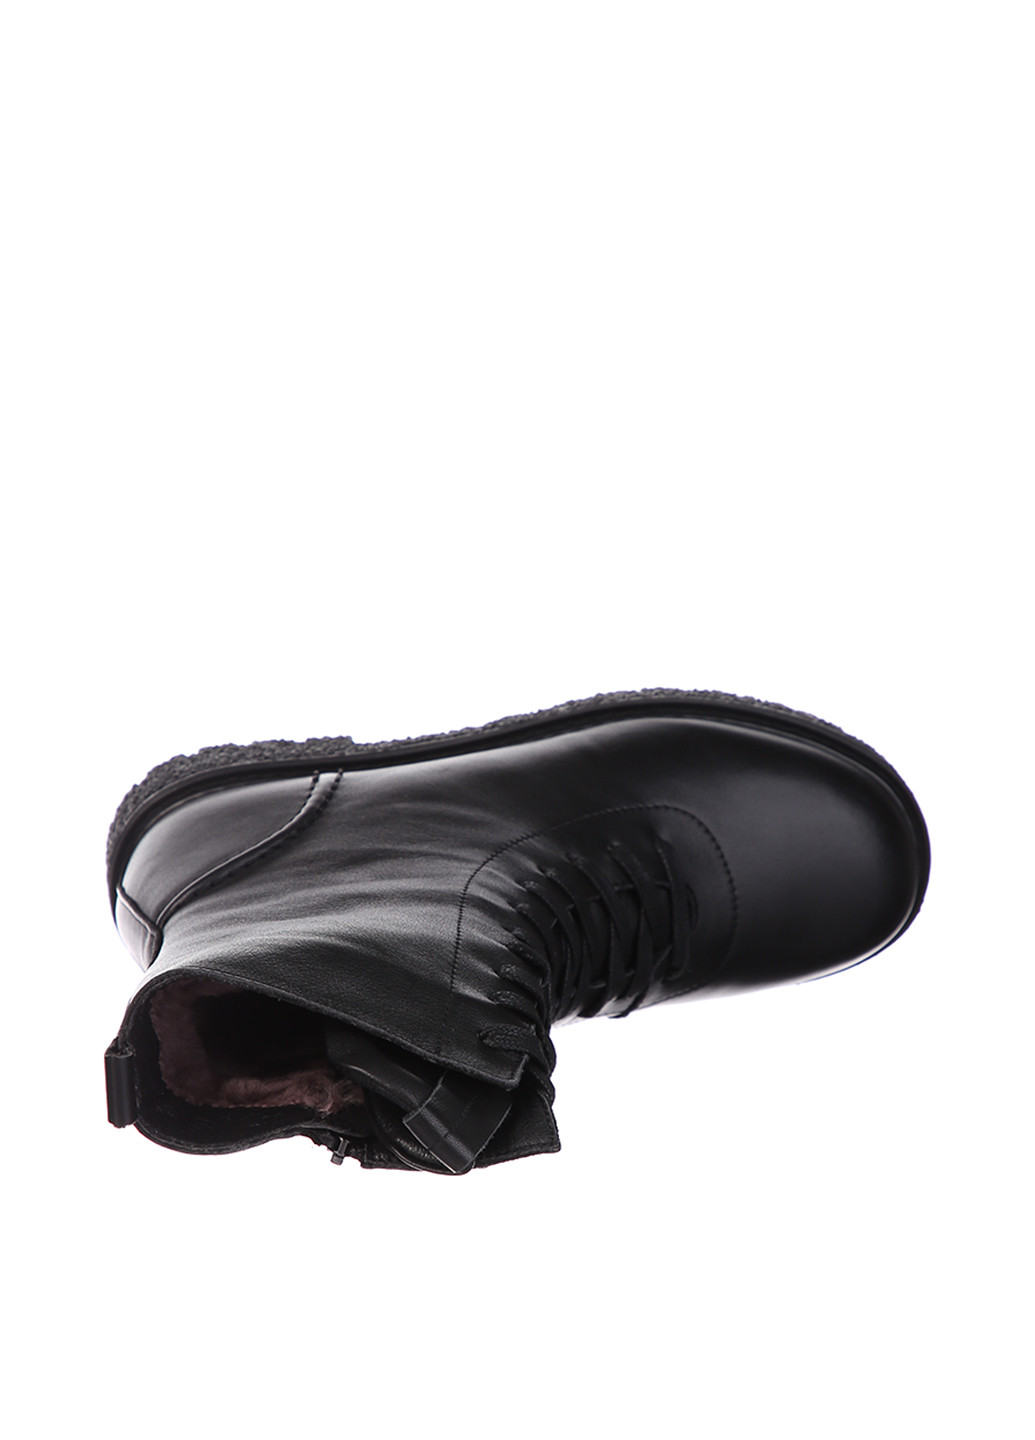 Зимние ботинки берцы Meego со шнуровкой